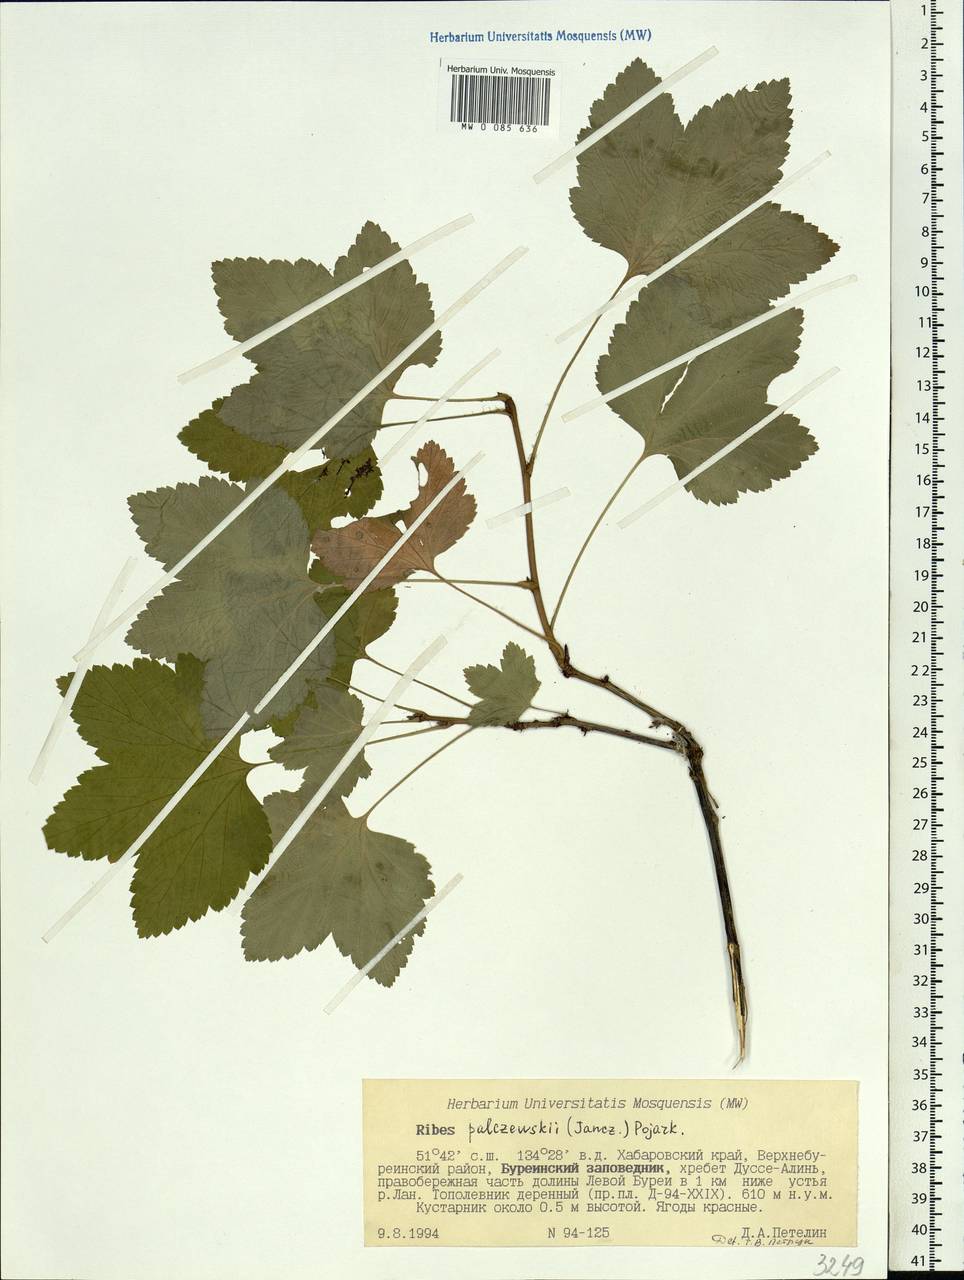 Ribes spicatum subsp. lapponicum Hyl., Siberia, Russian Far East (S6) (Russia)